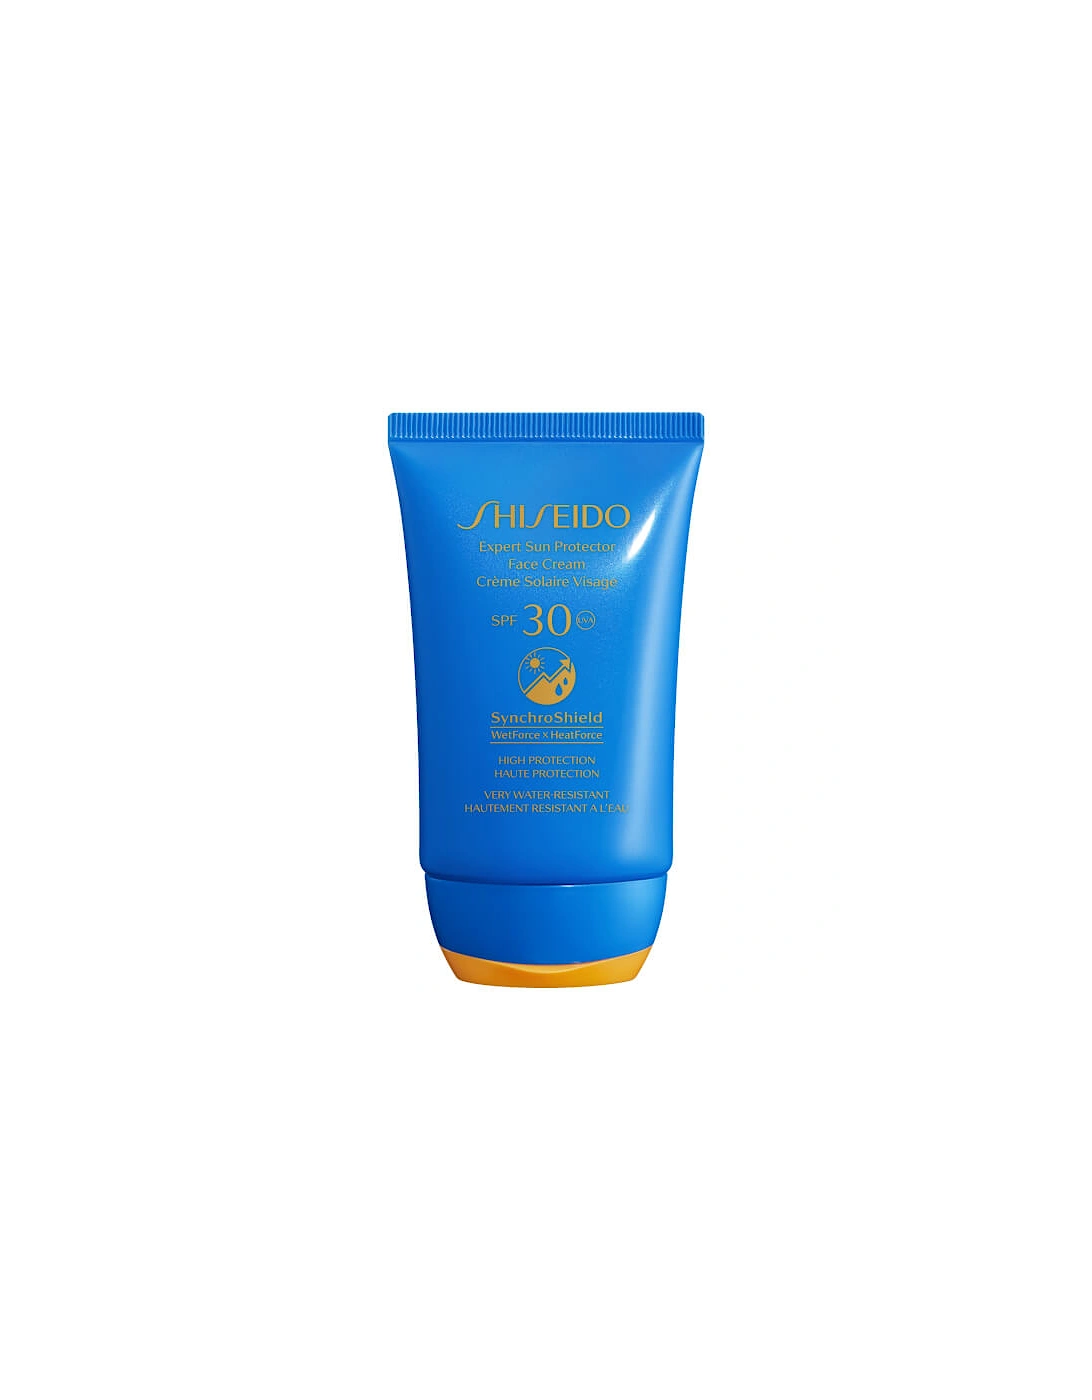 Expert Sun Protector SPF30 Face Cream 50ml - Shiseido, 2 of 1